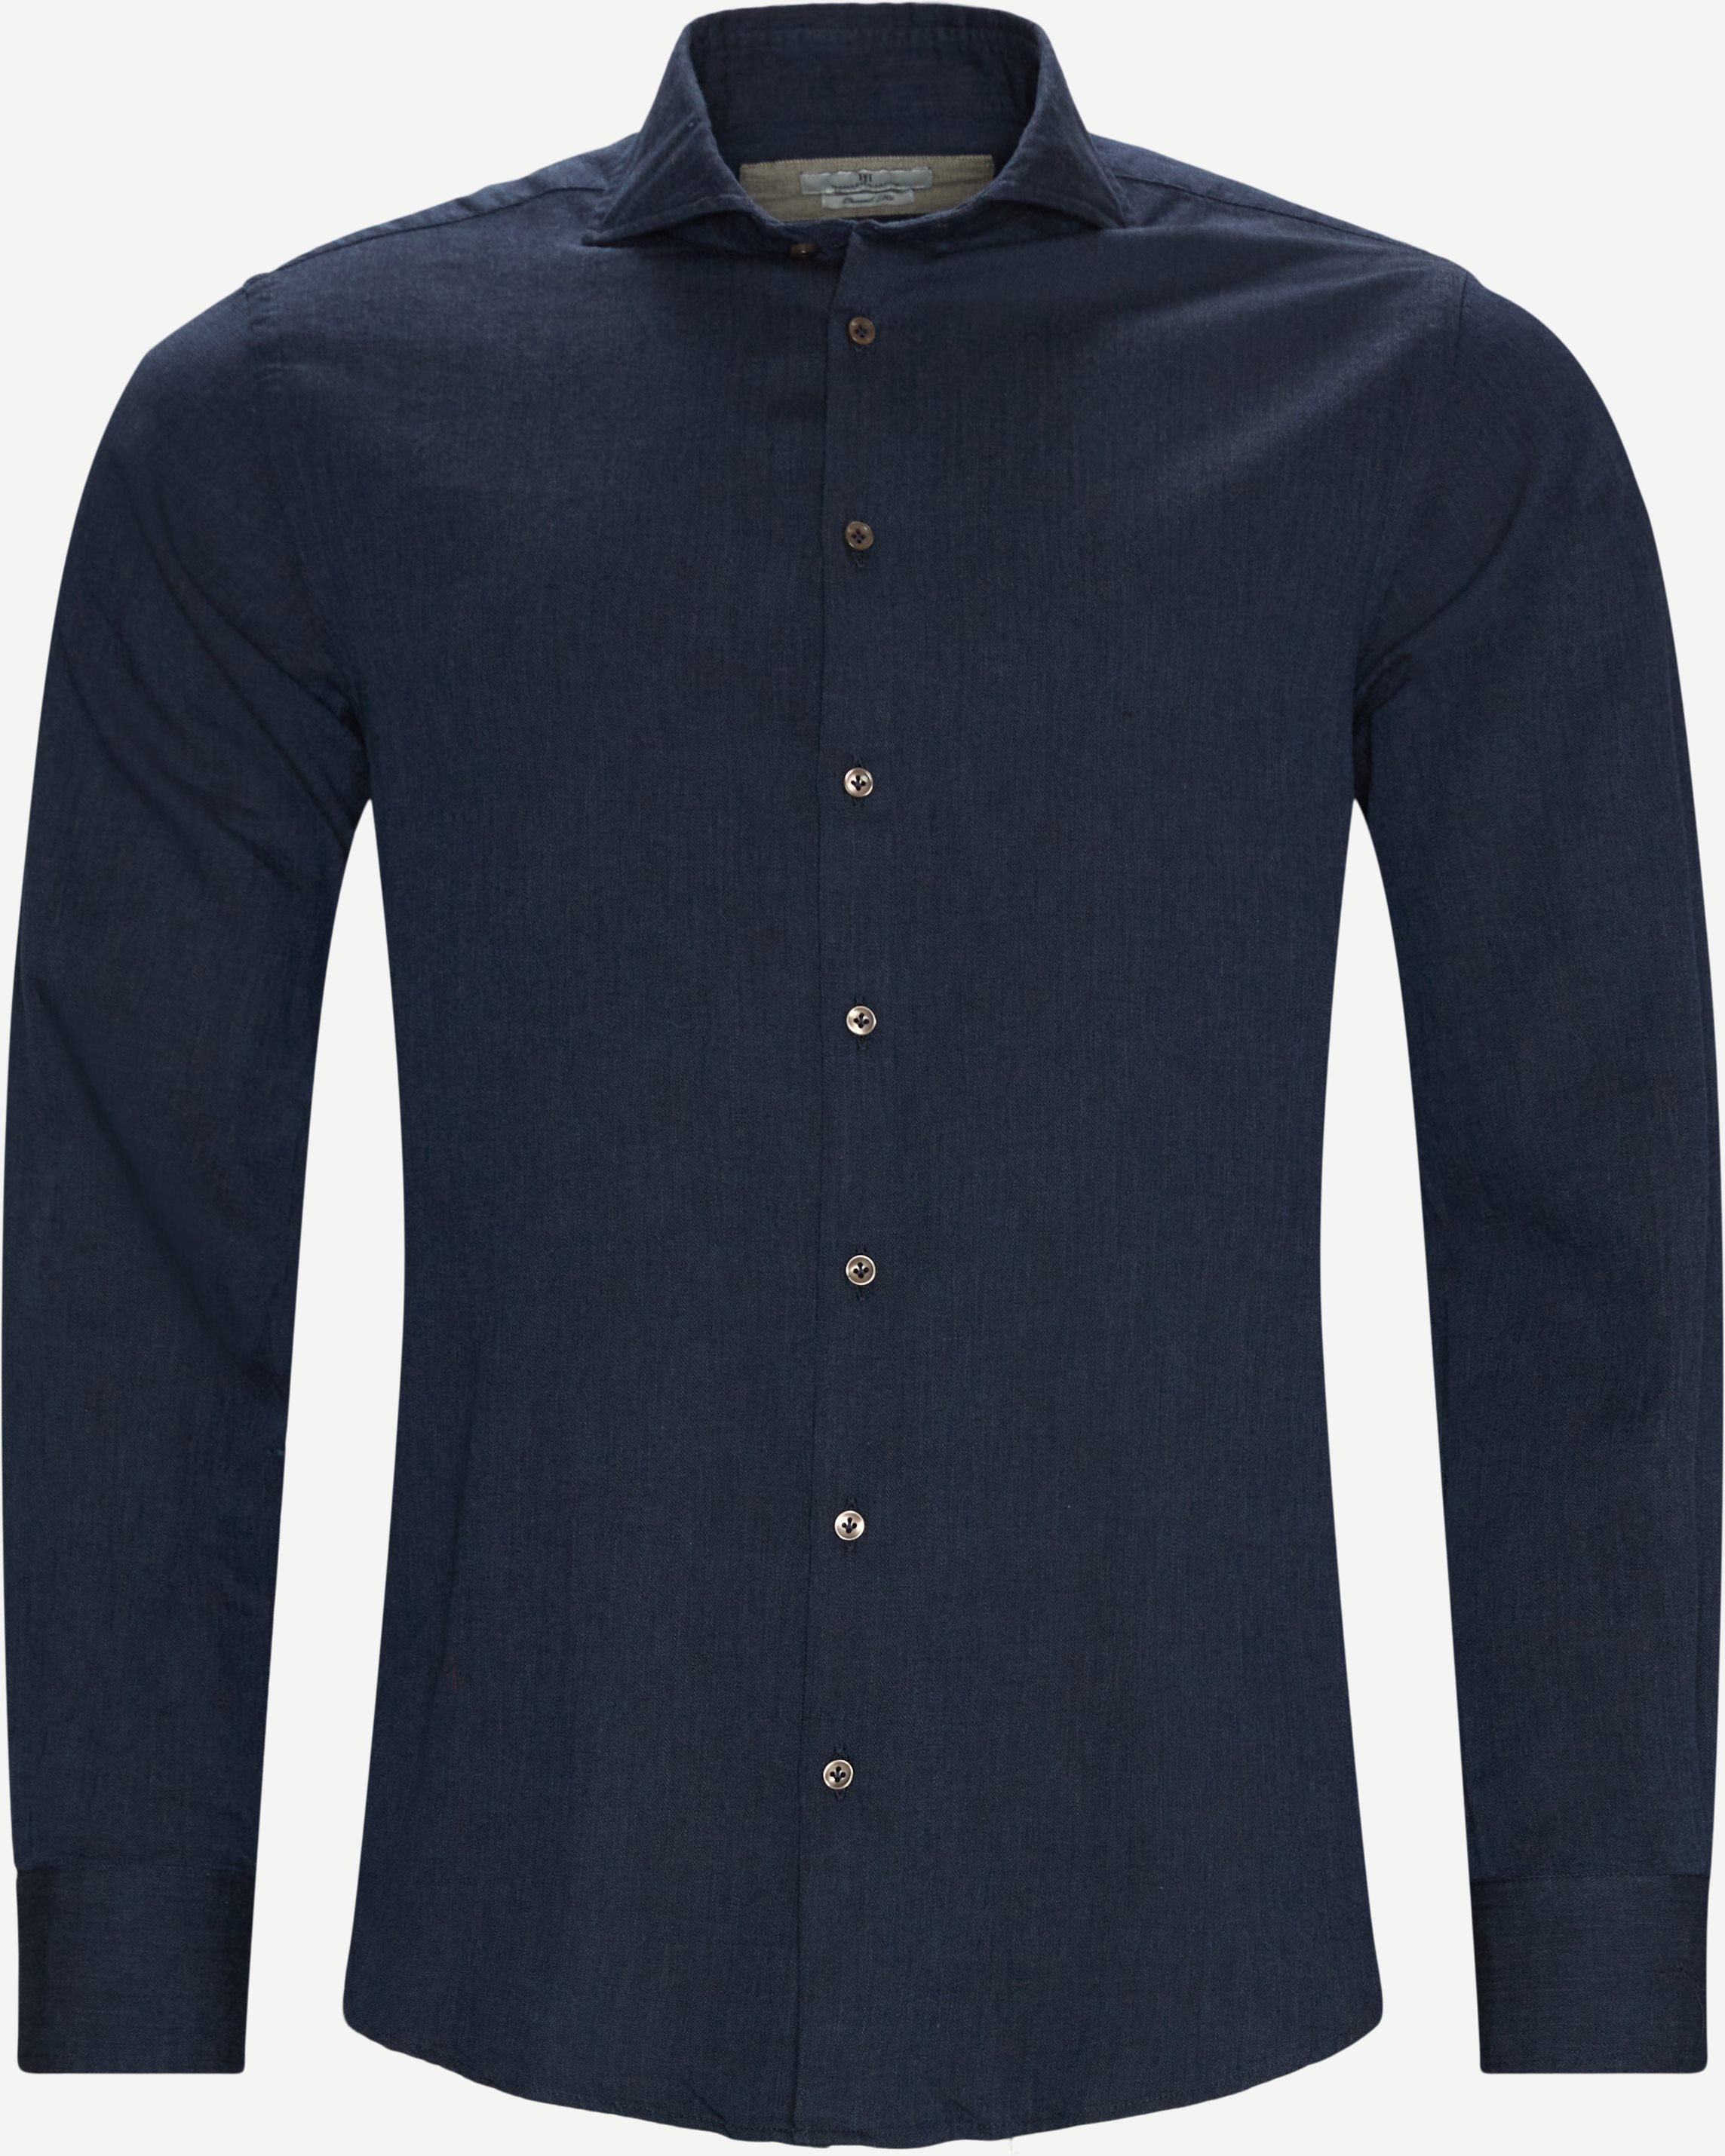 07122 Weiches Flanellhemd mit Fischgrätmuster - Hemden - Casual fit - Blau